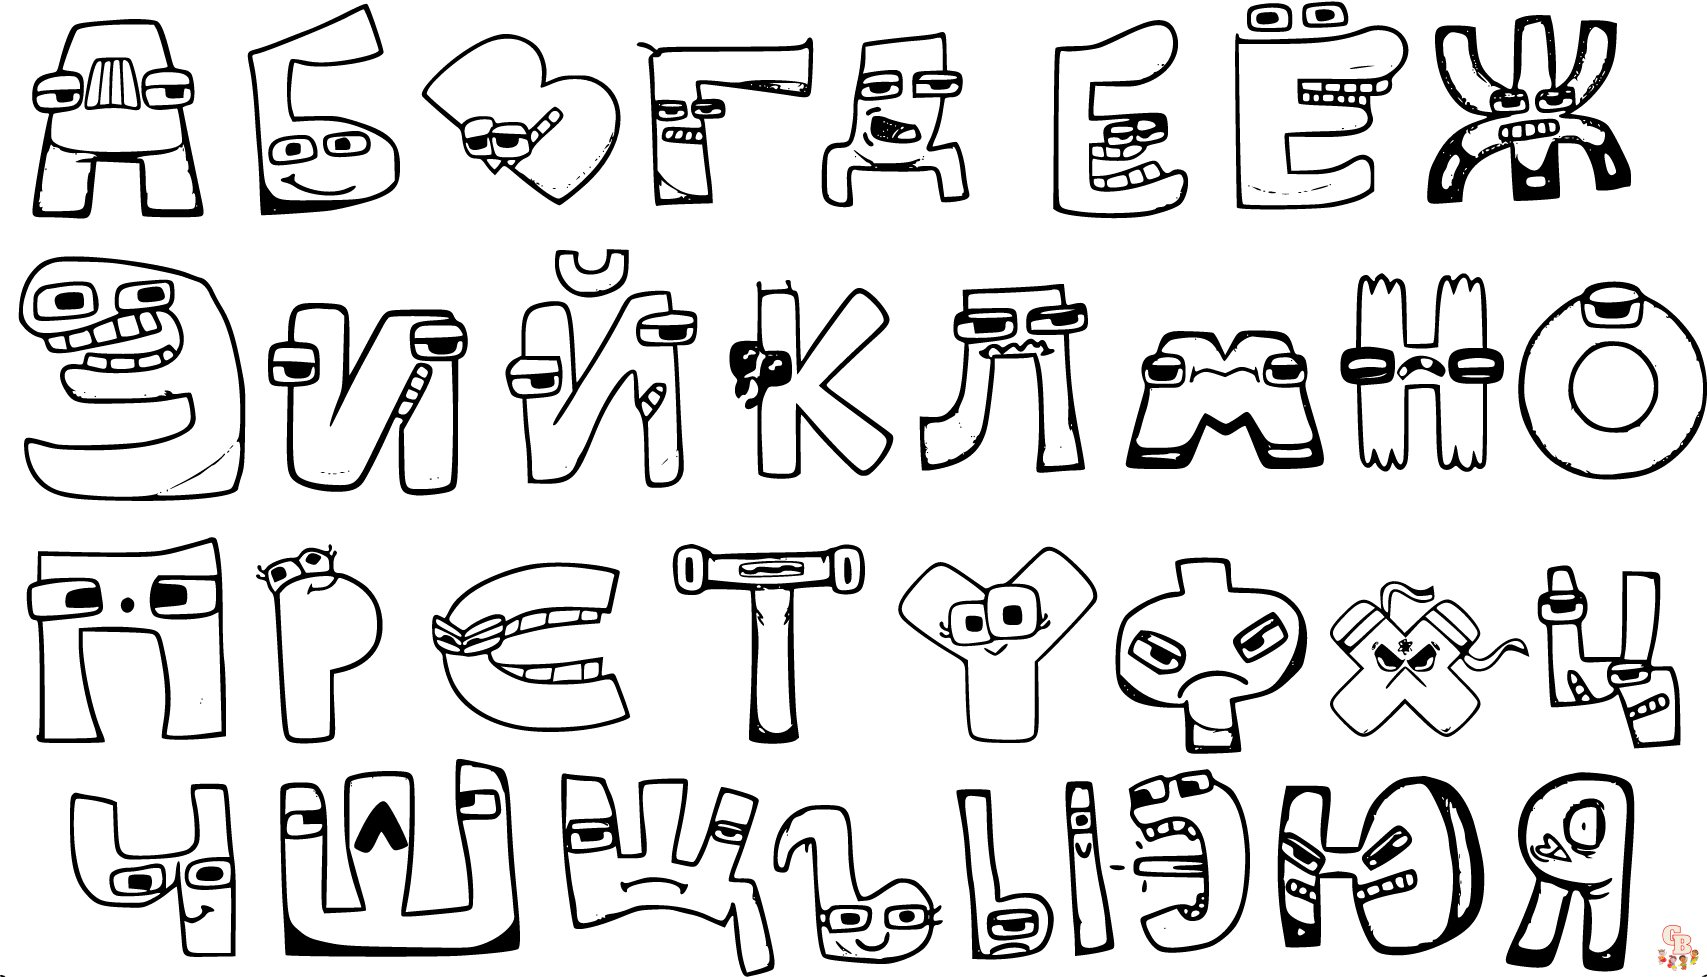 Páginas para colorir do conhecimento do alfabeto - diversão e